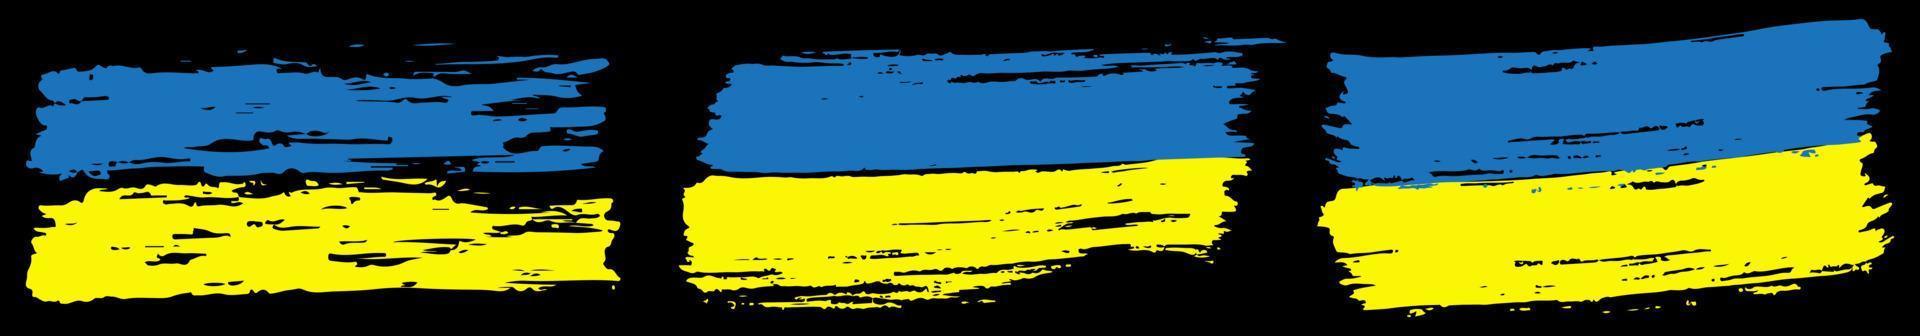 Abstrich Splash Pinsel Grunge-Stil. Ukraine-Flagge, Set zum Drucken von T-Shirts, Briefpapier, Hintergrundvorlage. vektorillustration isoliert. vektor